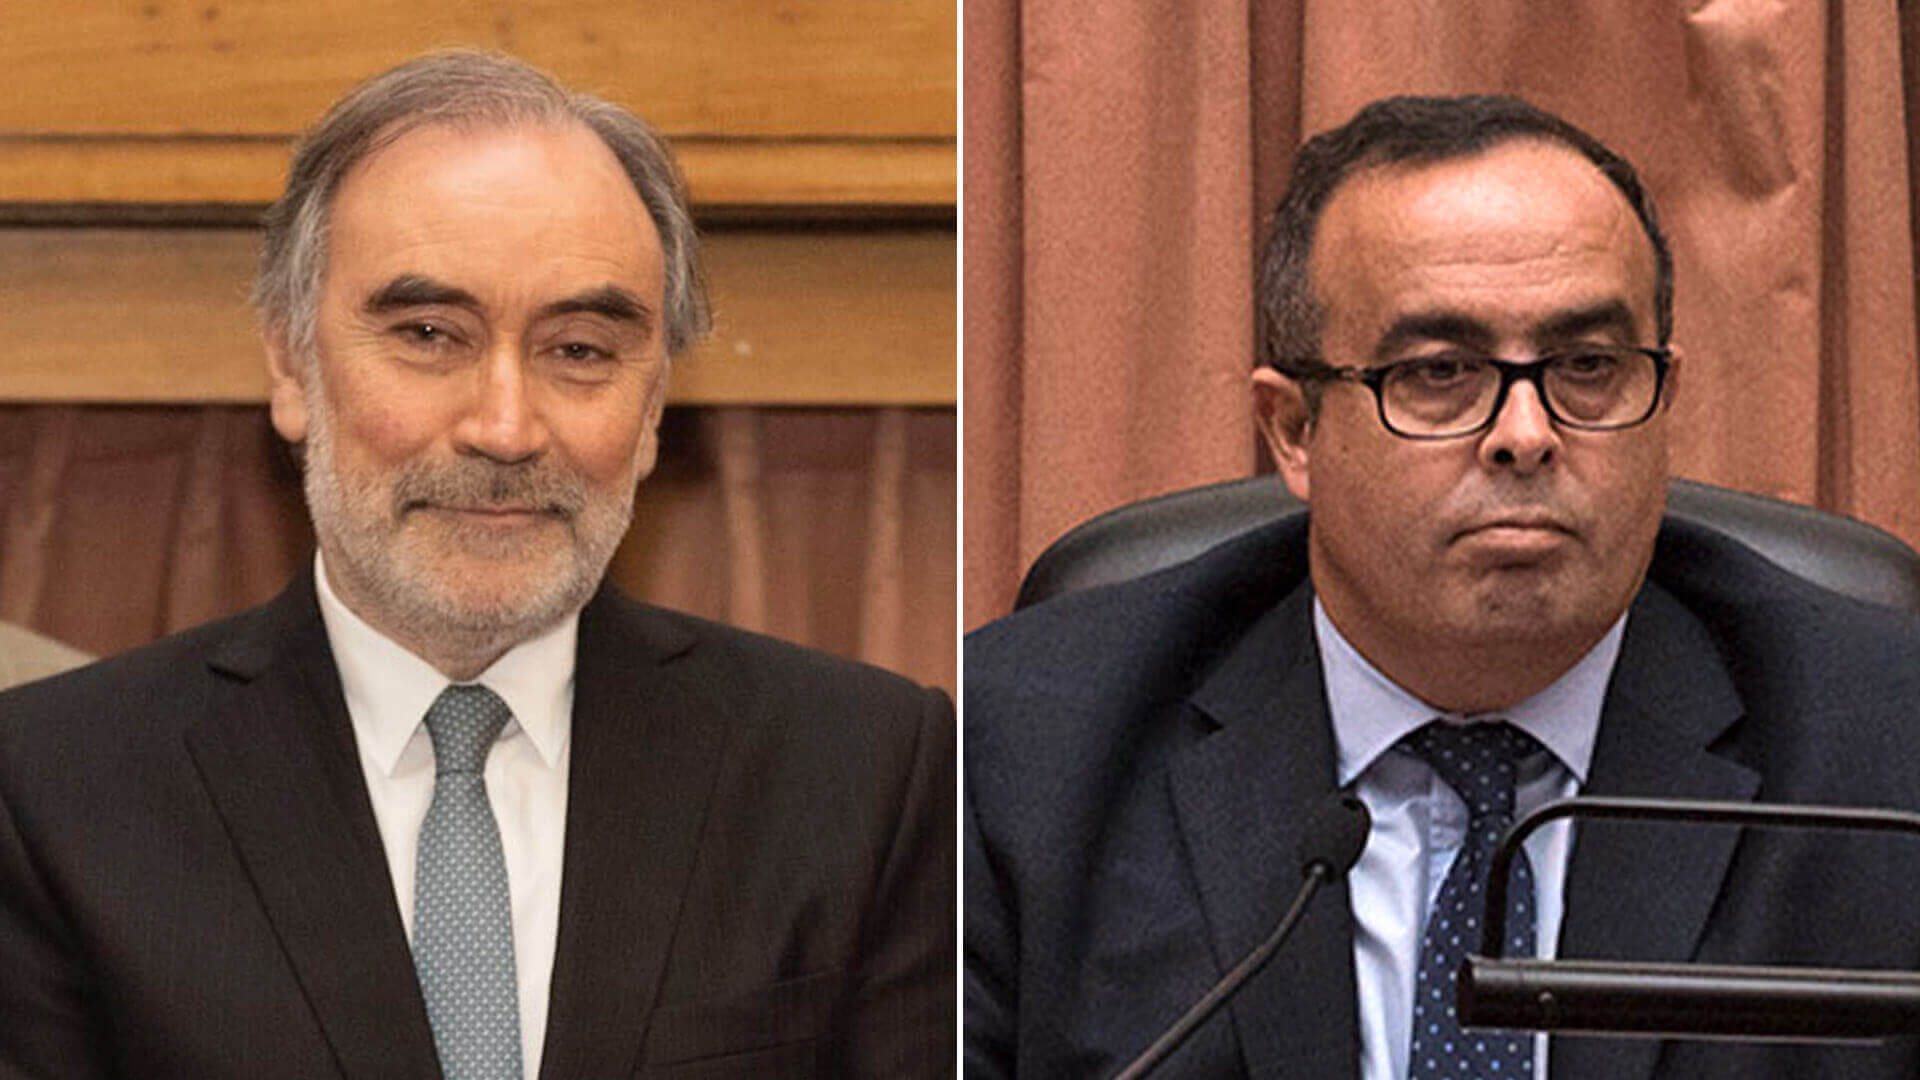 Bruglia y Bertuzzi se reincorporaron a la Cámara Federal después del fallo  de la Corte Suprema - Infobae